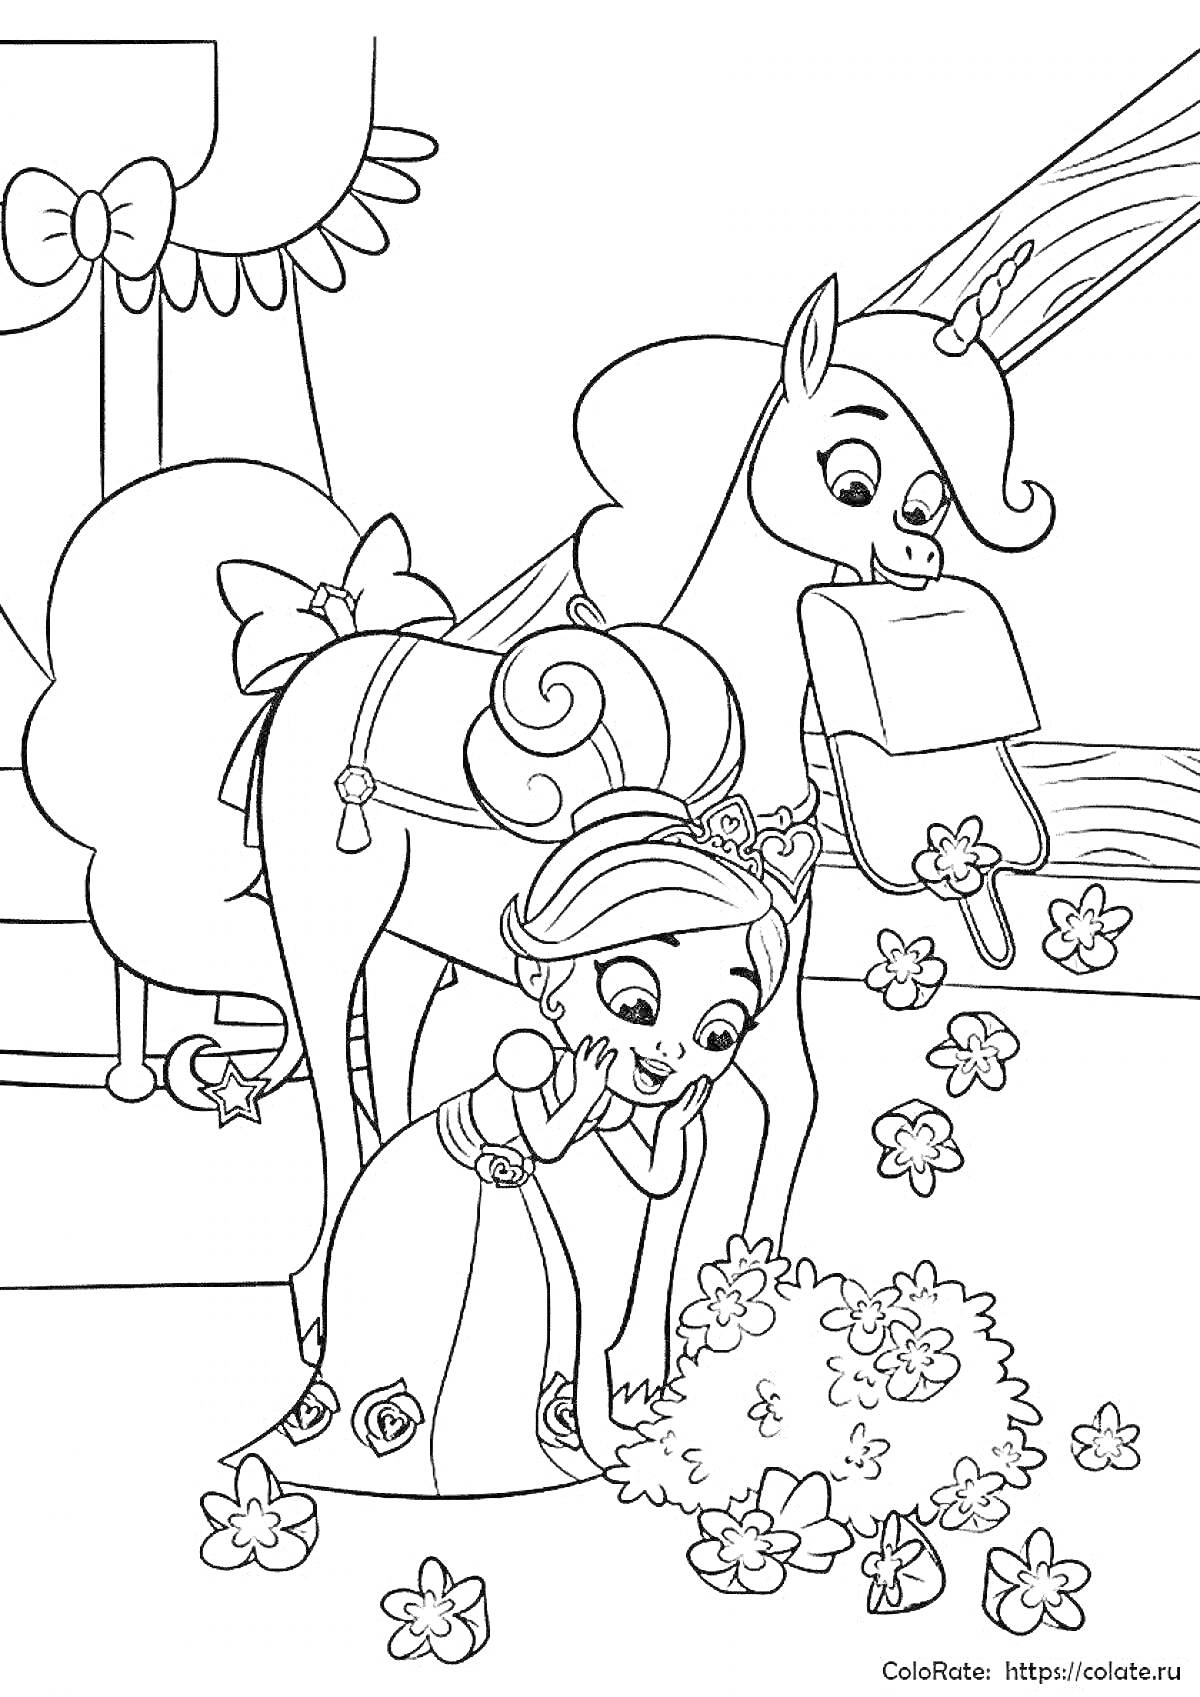 Раскраска Принцесса собирает цветы рядом с лошадью в замке